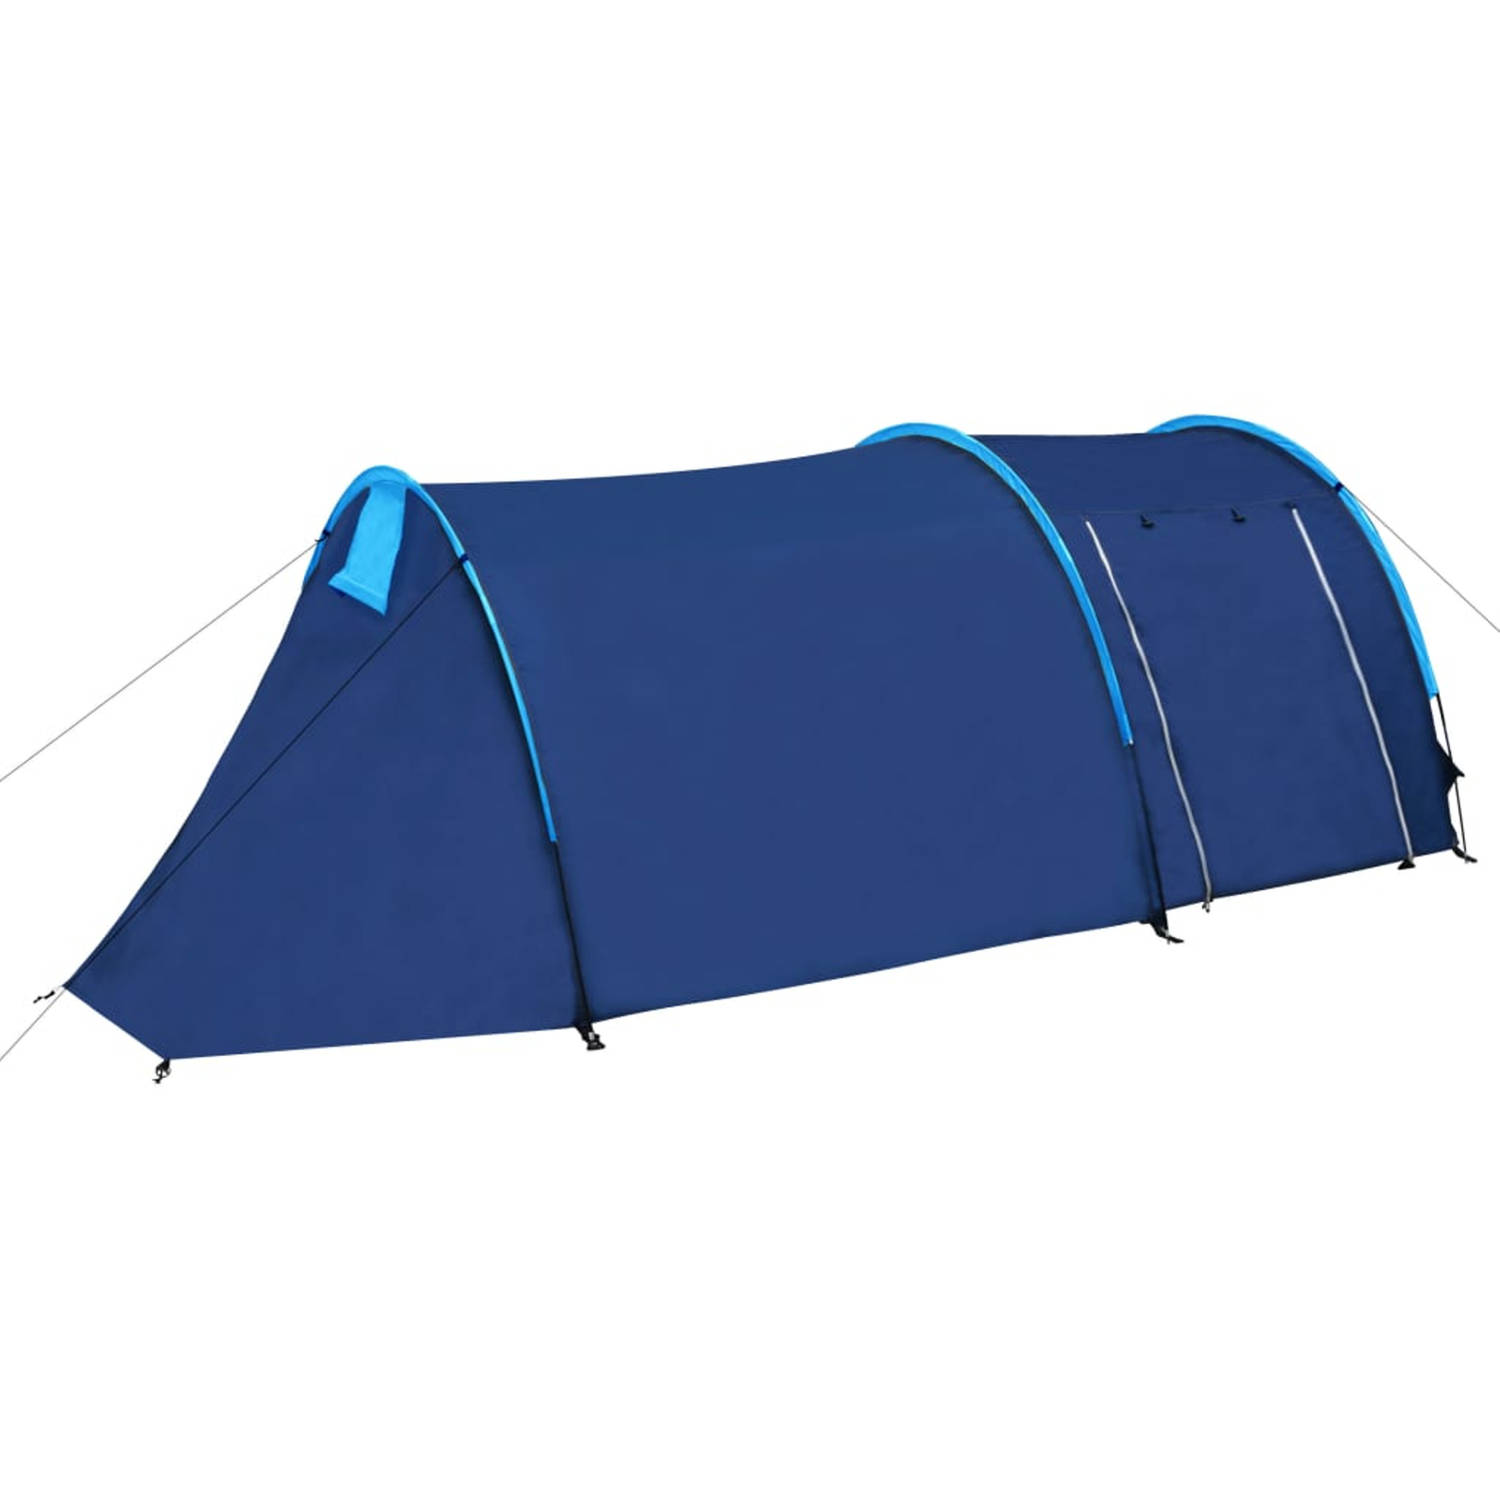 Waterbestendige campingtent voor 4 personen Marineblauw-lichtblauw